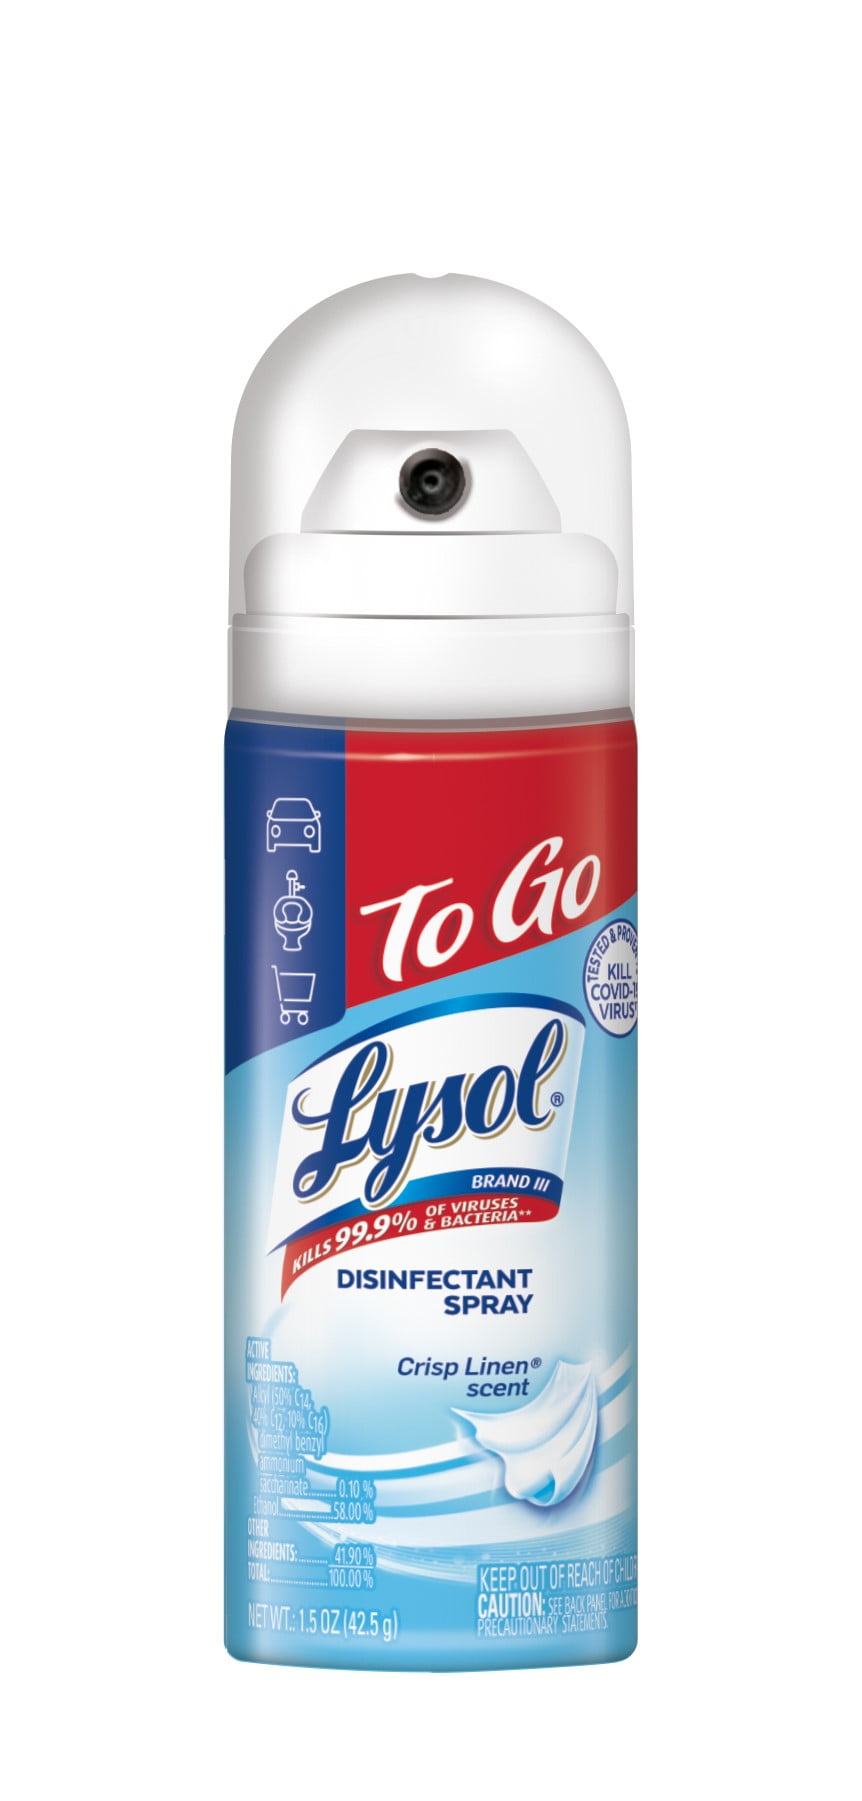 umoral Tilintetgøre Nord Vest Lysol Crisp Linen Disinfectant Spray To Go 1.5oz - Walmart.com